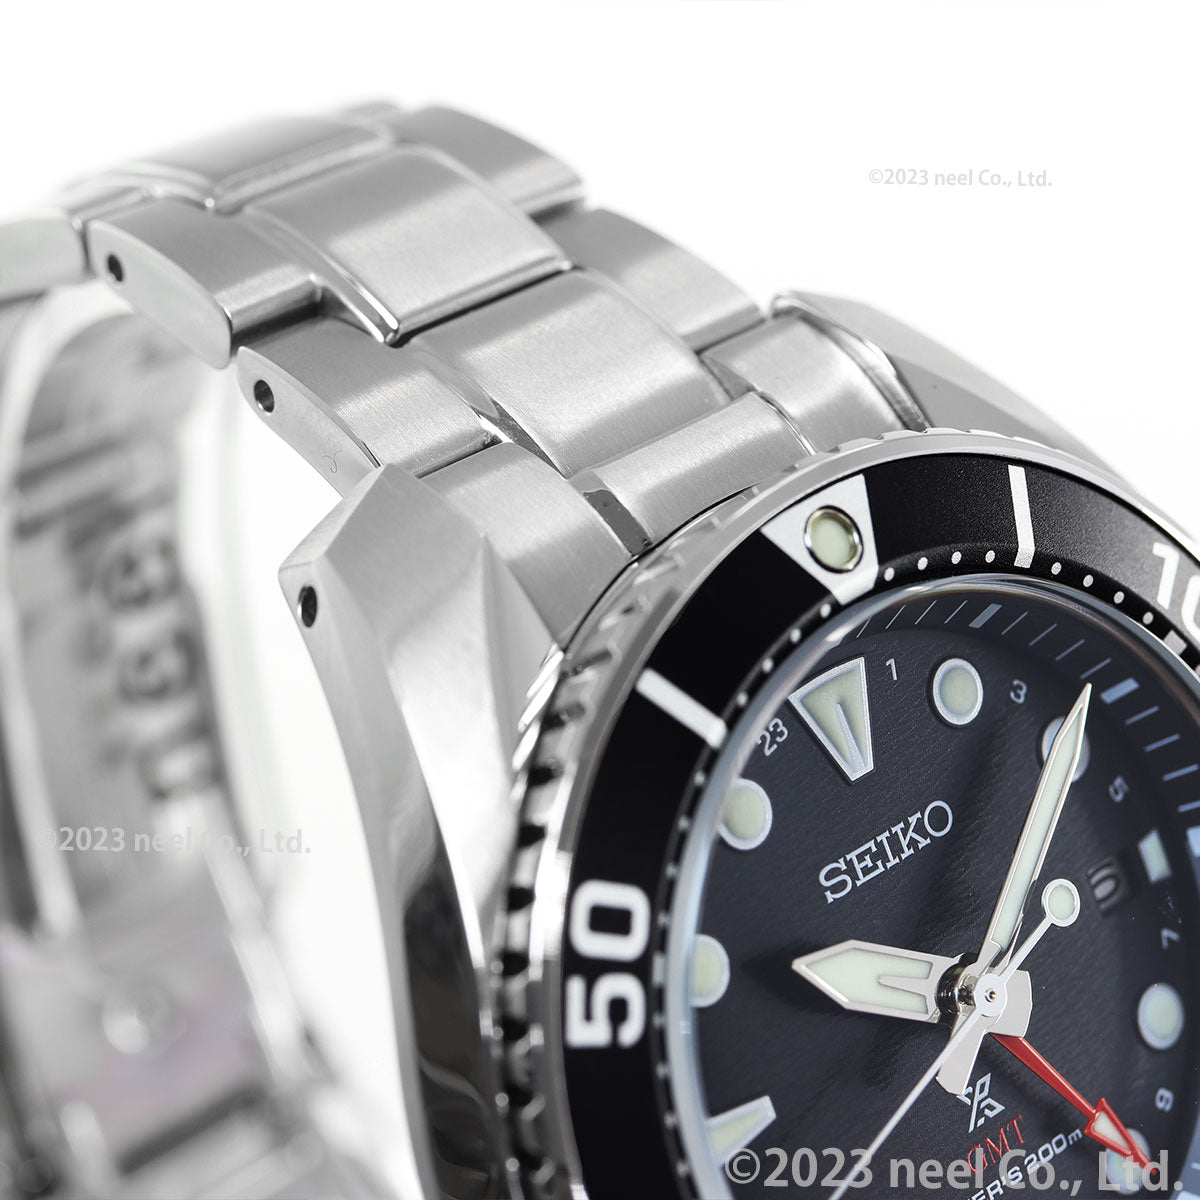 セイコー プロスペックス SEIKO PROSPEX ダイバースキューバ ソーラー 腕時計 メンズ スモウ SUMO GMT SBPK003